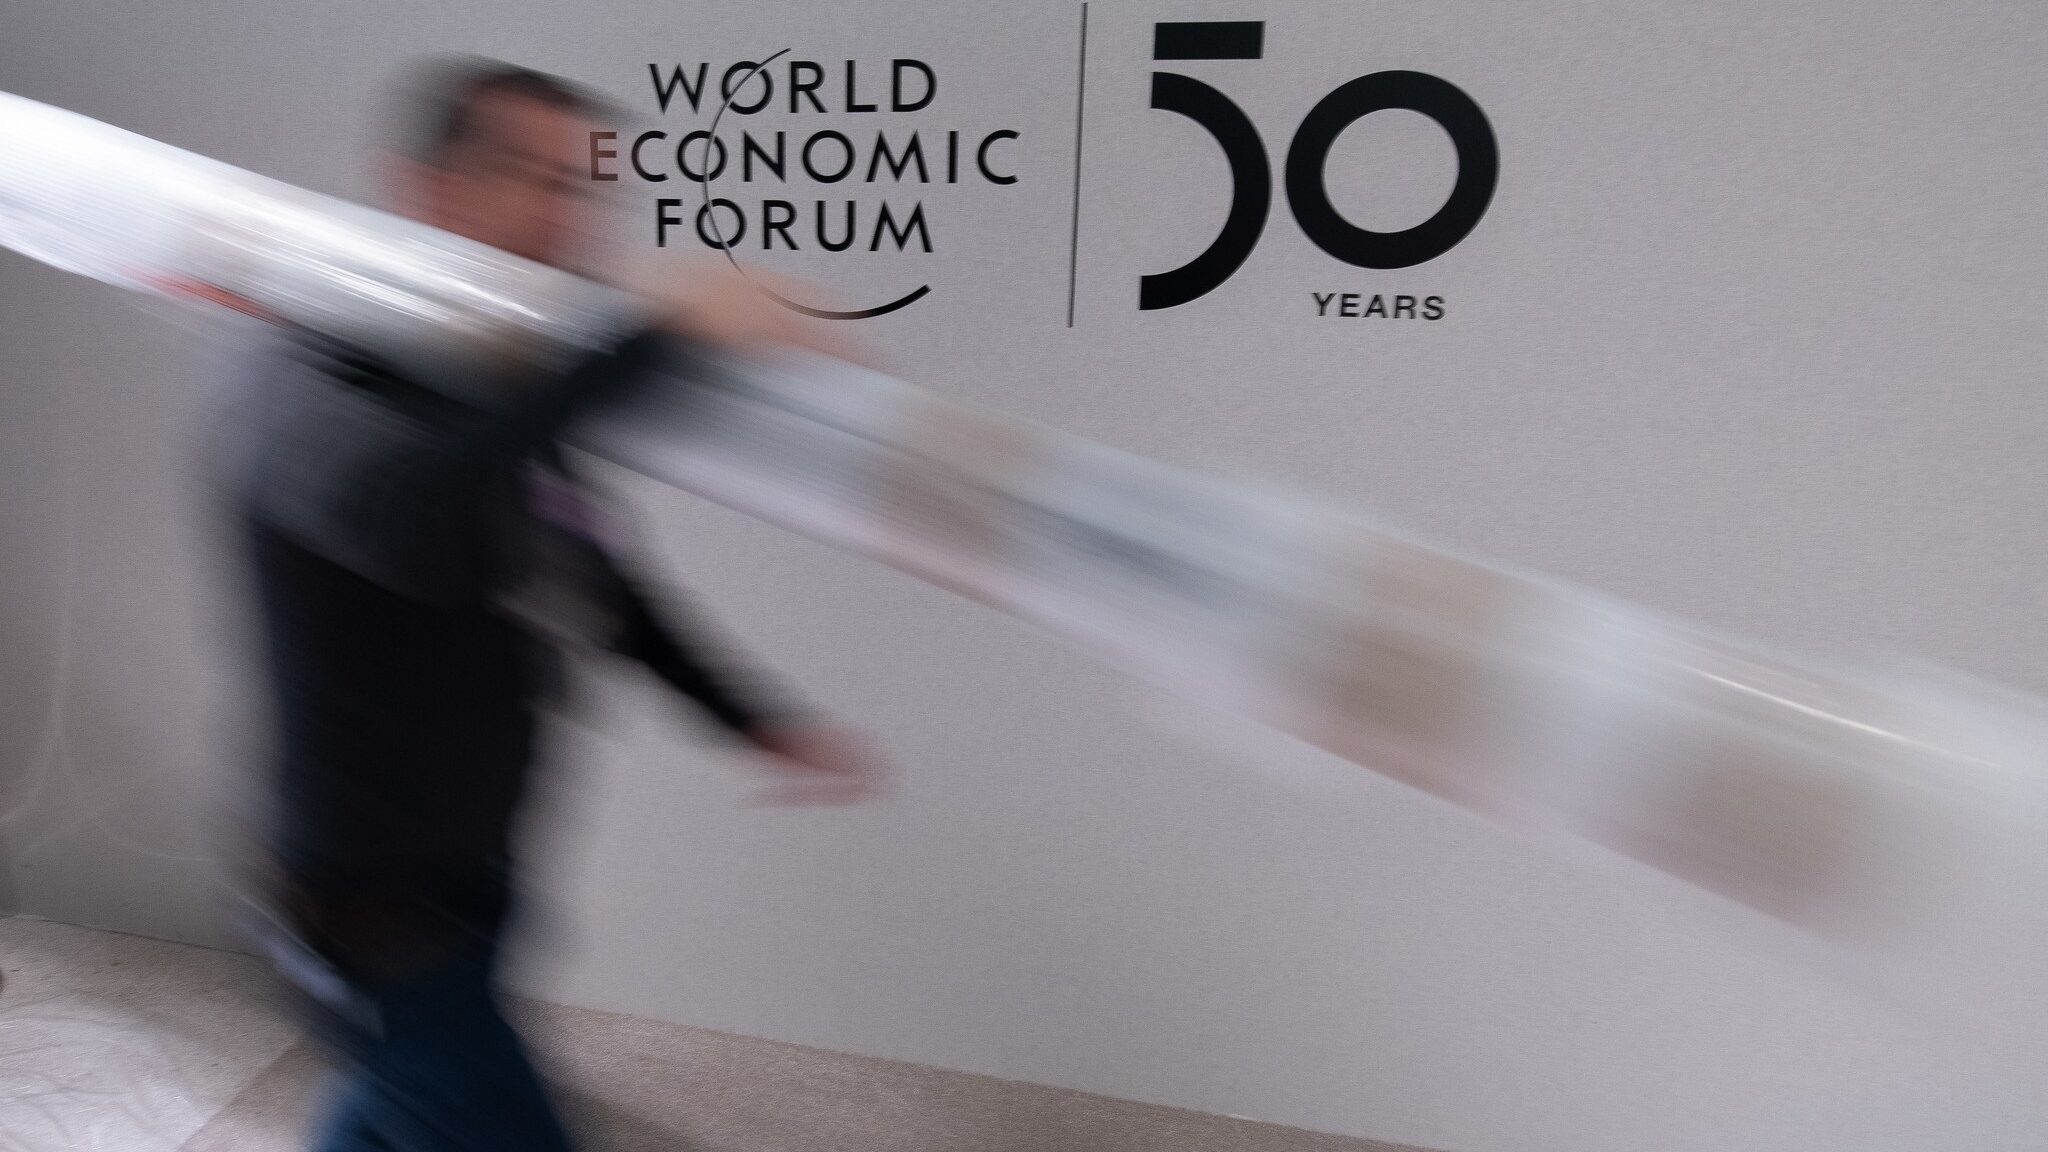 La pandemia obliga a aplazar el Foro de Davos de 2022 hasta mediados de año